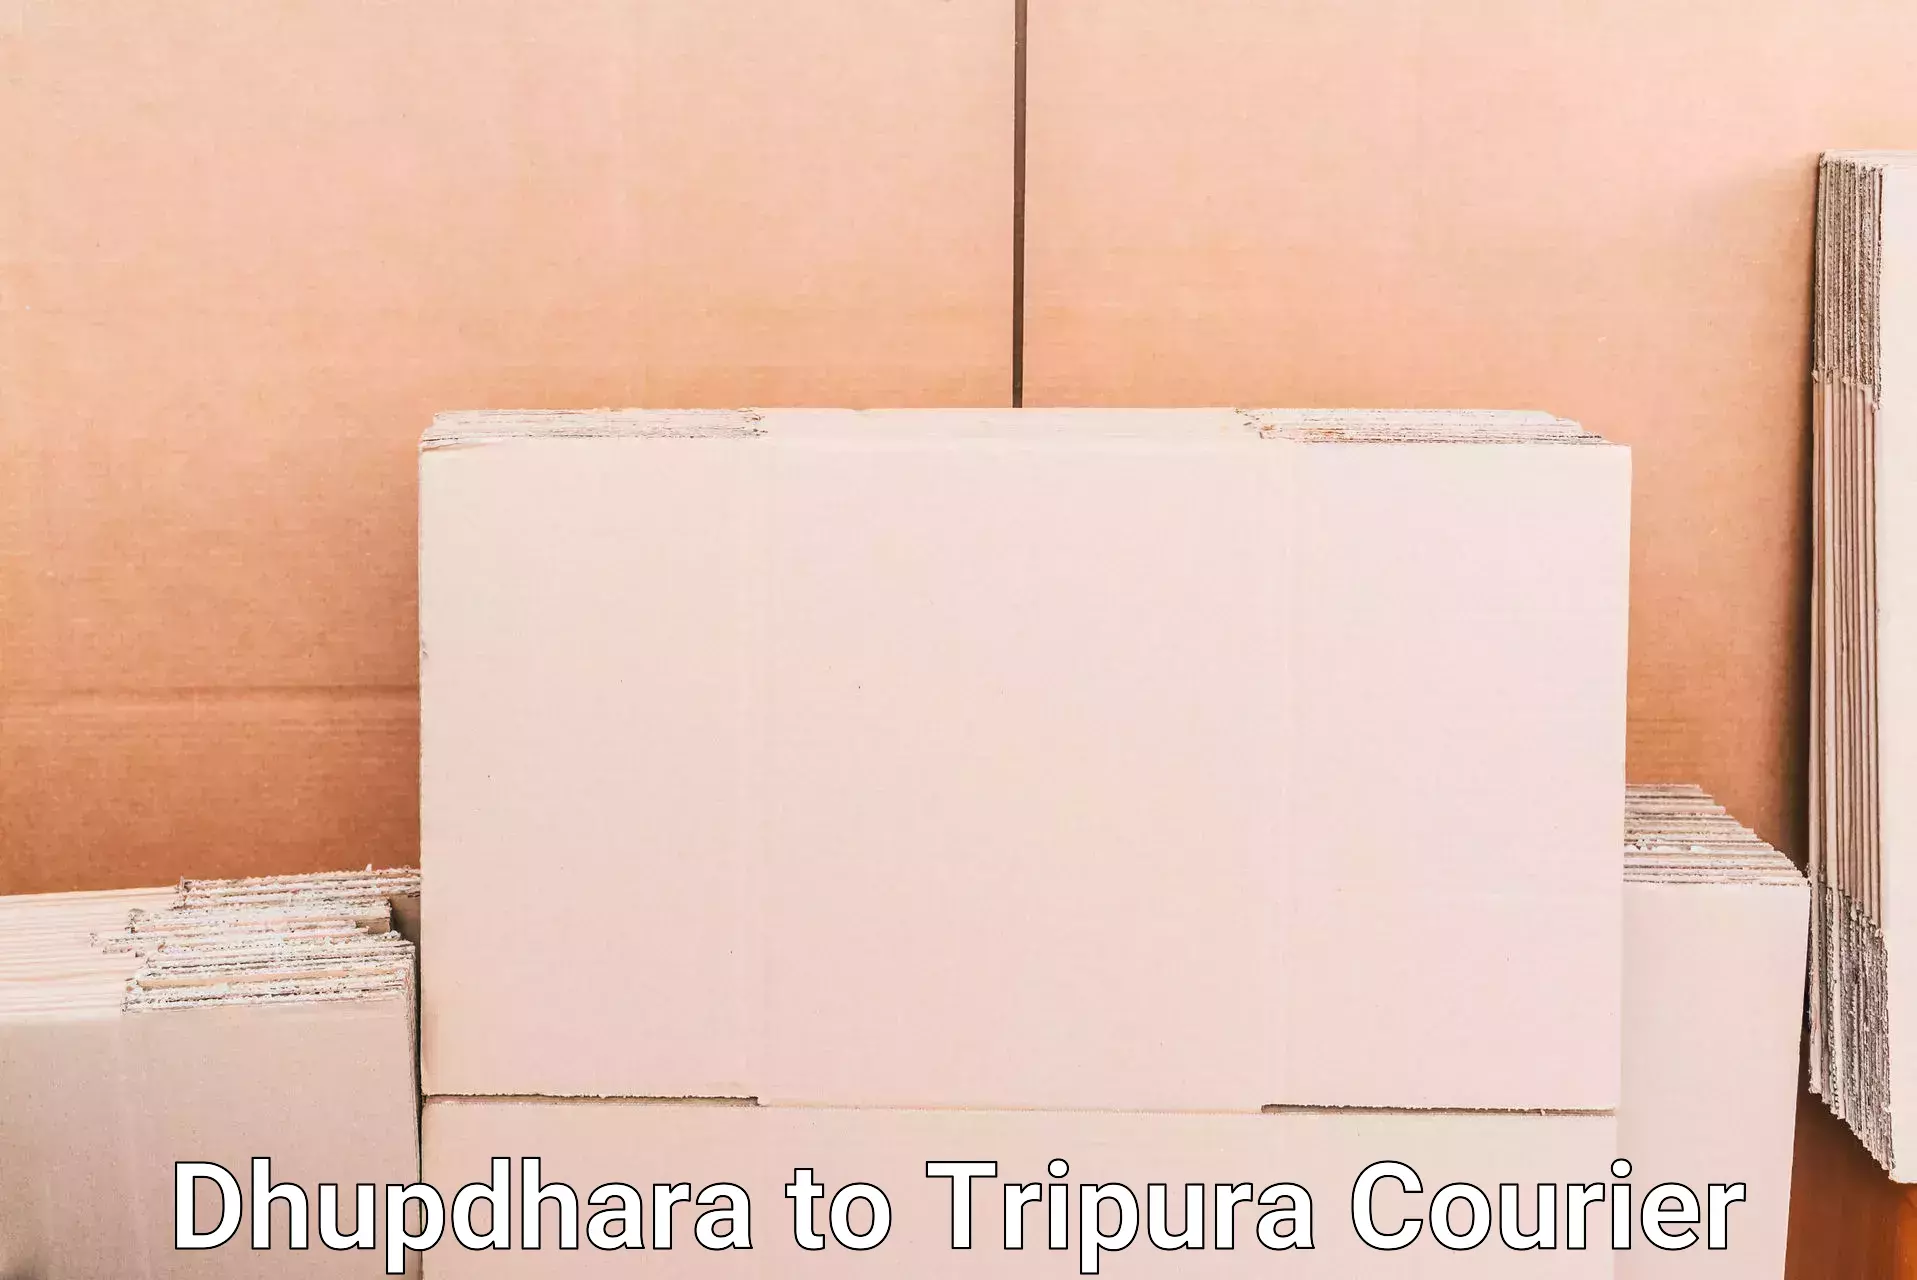 Baggage transport technology Dhupdhara to Udaipur Tripura